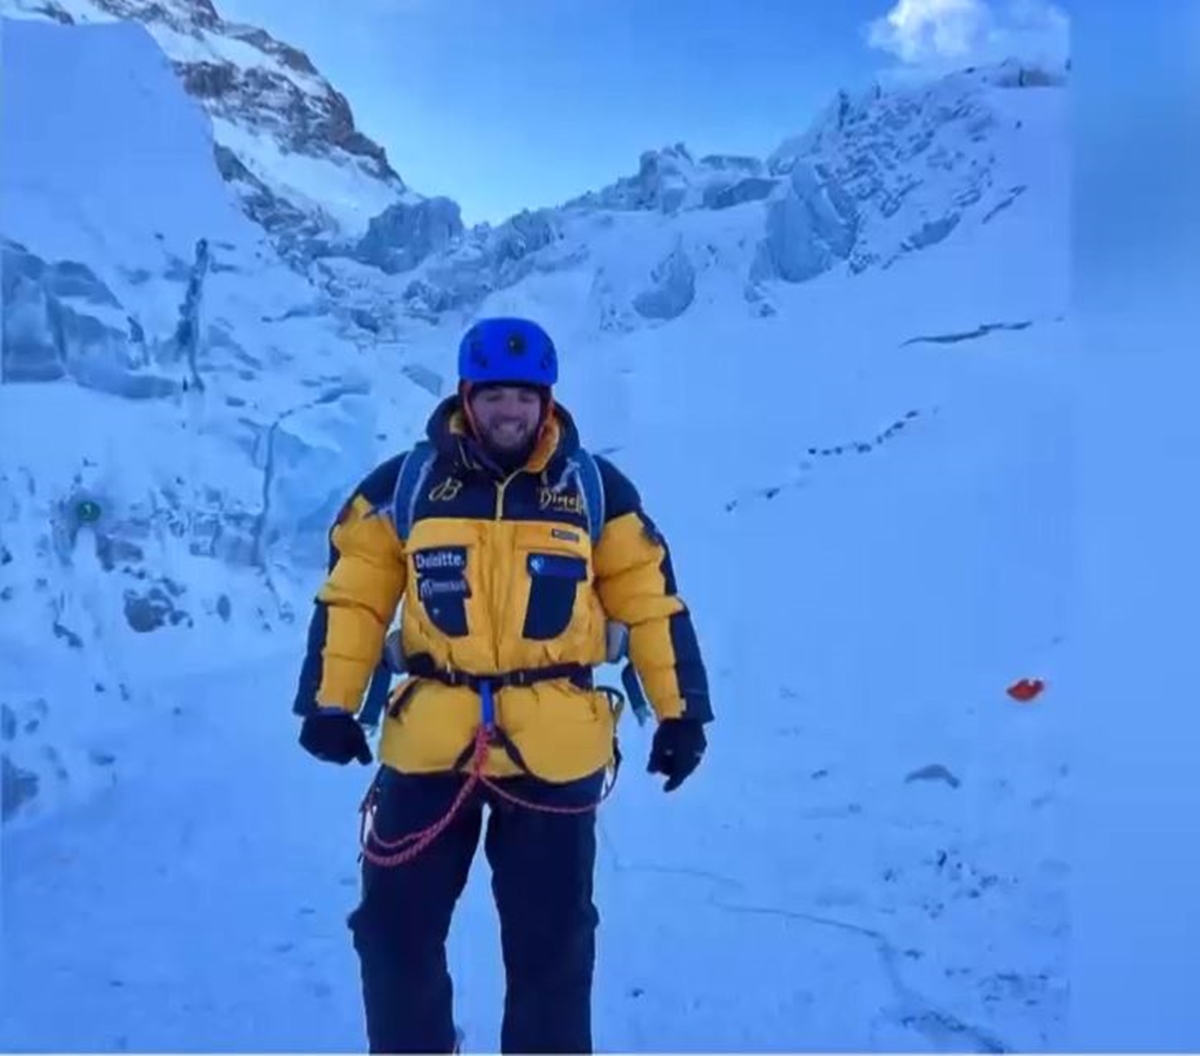 Μ. Γιαννάκου για την αποστολή στο Έβερεστ: Μετά τα 8.000 μ. είναι η ζώνη θανάτου – Σε μια εβδομάδα ξεκινάμε την ανάβαση για την κορυφή